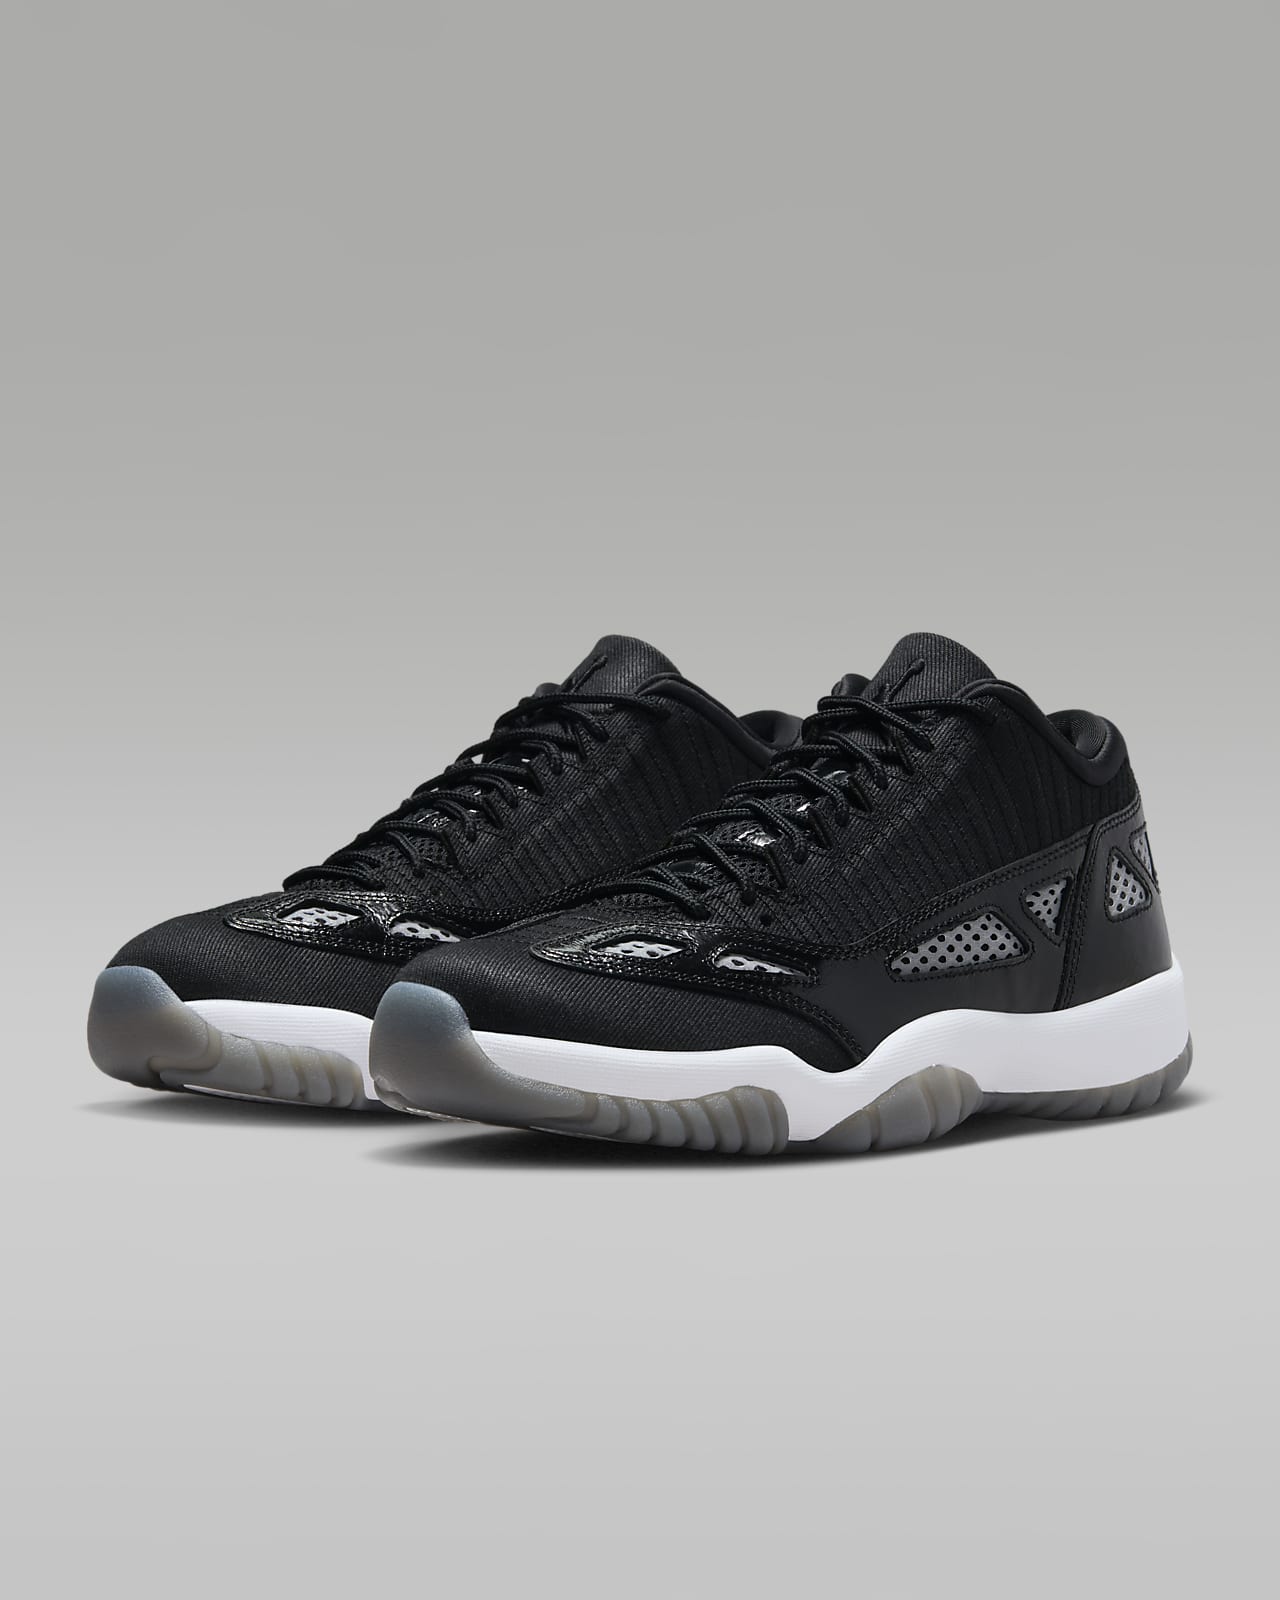 Air Jordan 11 Retro Low IE Shoe Size 11 (Black)